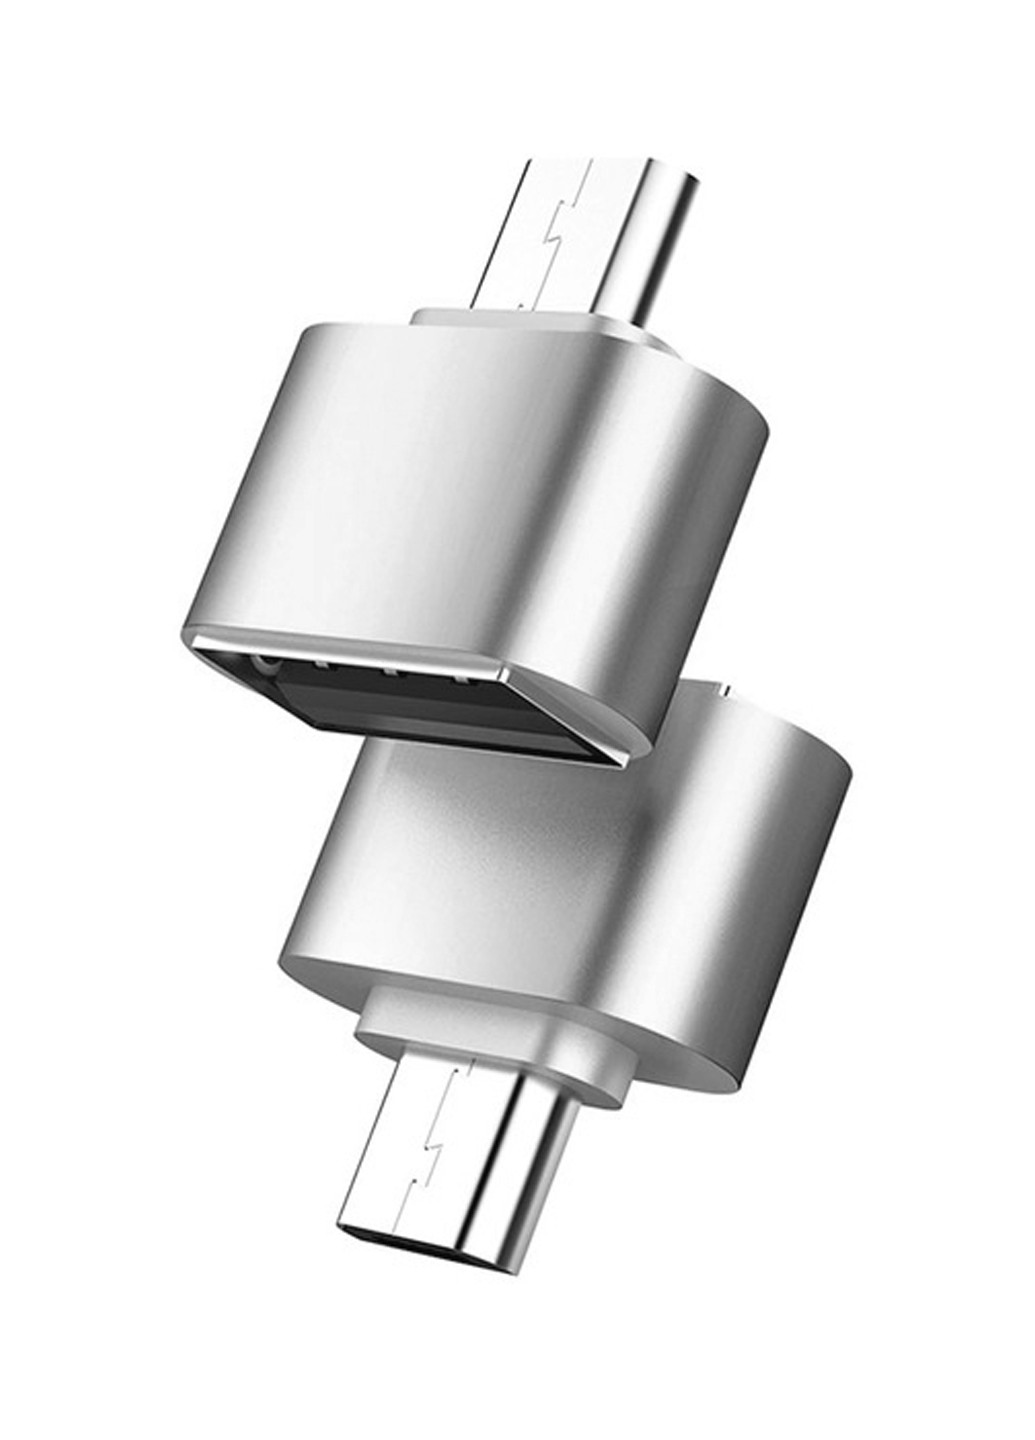 Перехідник AC-035 USB - Type-C срібний XoKo ac-035 usb - type-c серебряный (144530508)